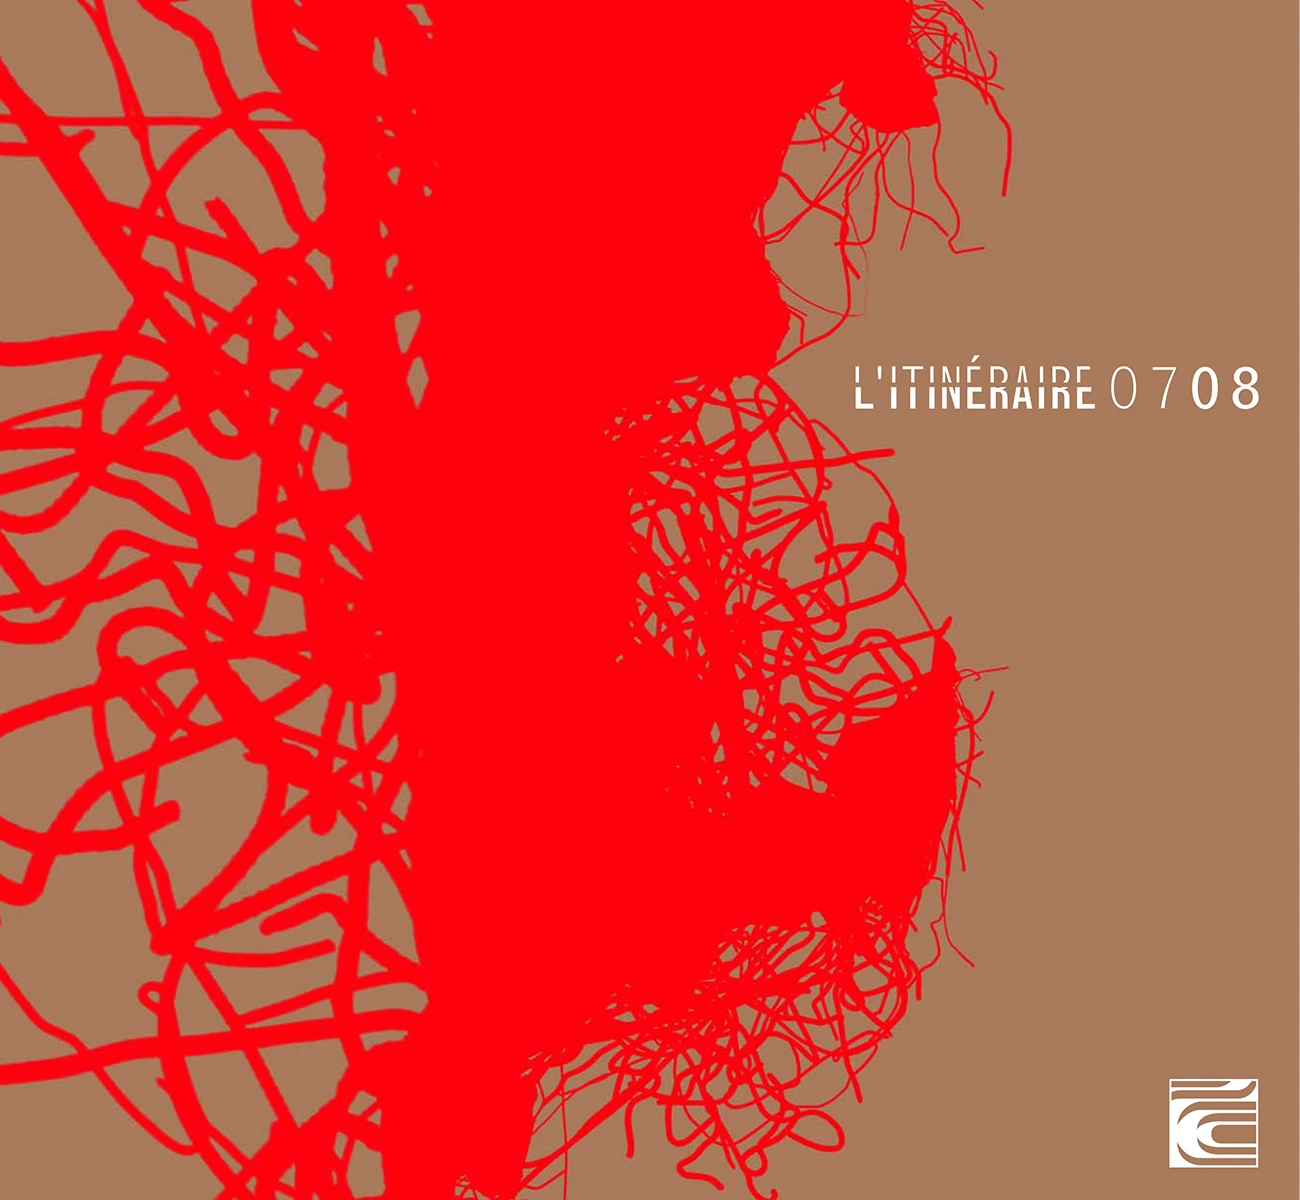 Image de couverture du projet L'Itinéraire 2007 2008 de l'ensemble musical L'Itinéraire de la page portfolio